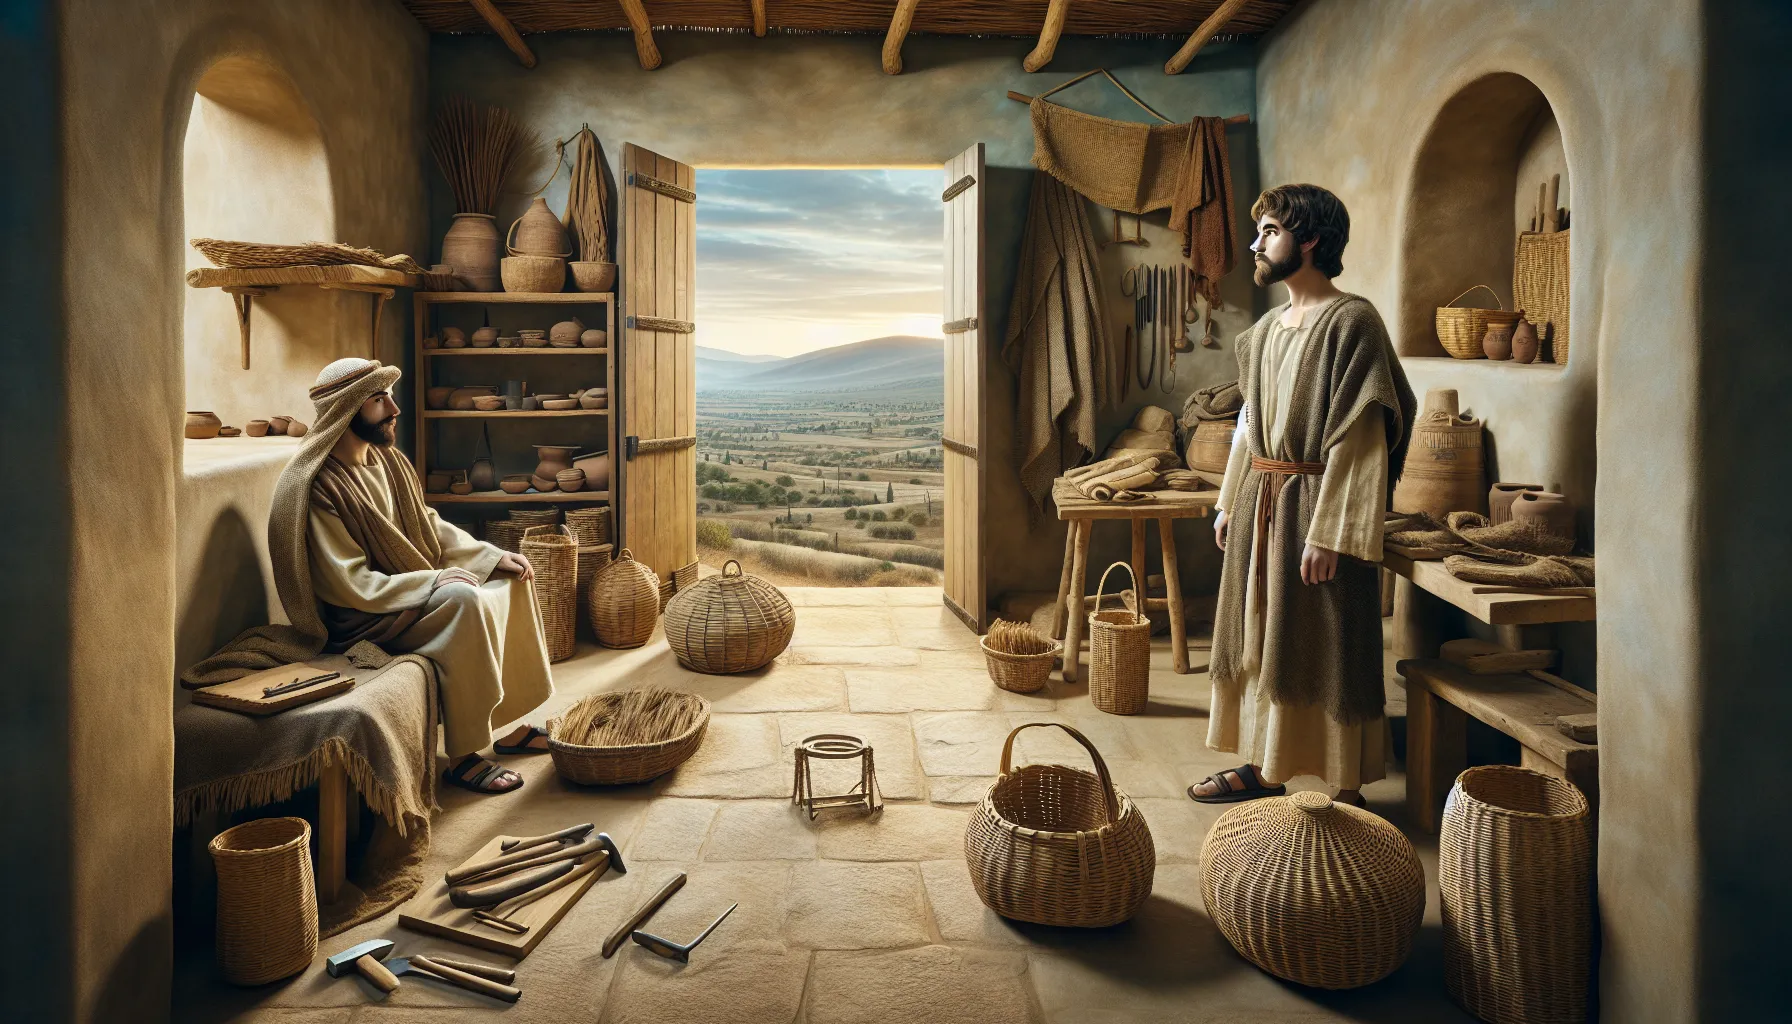 Imagen representativa de la infancia de Jesucristo en Nazaret de acuerdo a las narraciones bíblicas.